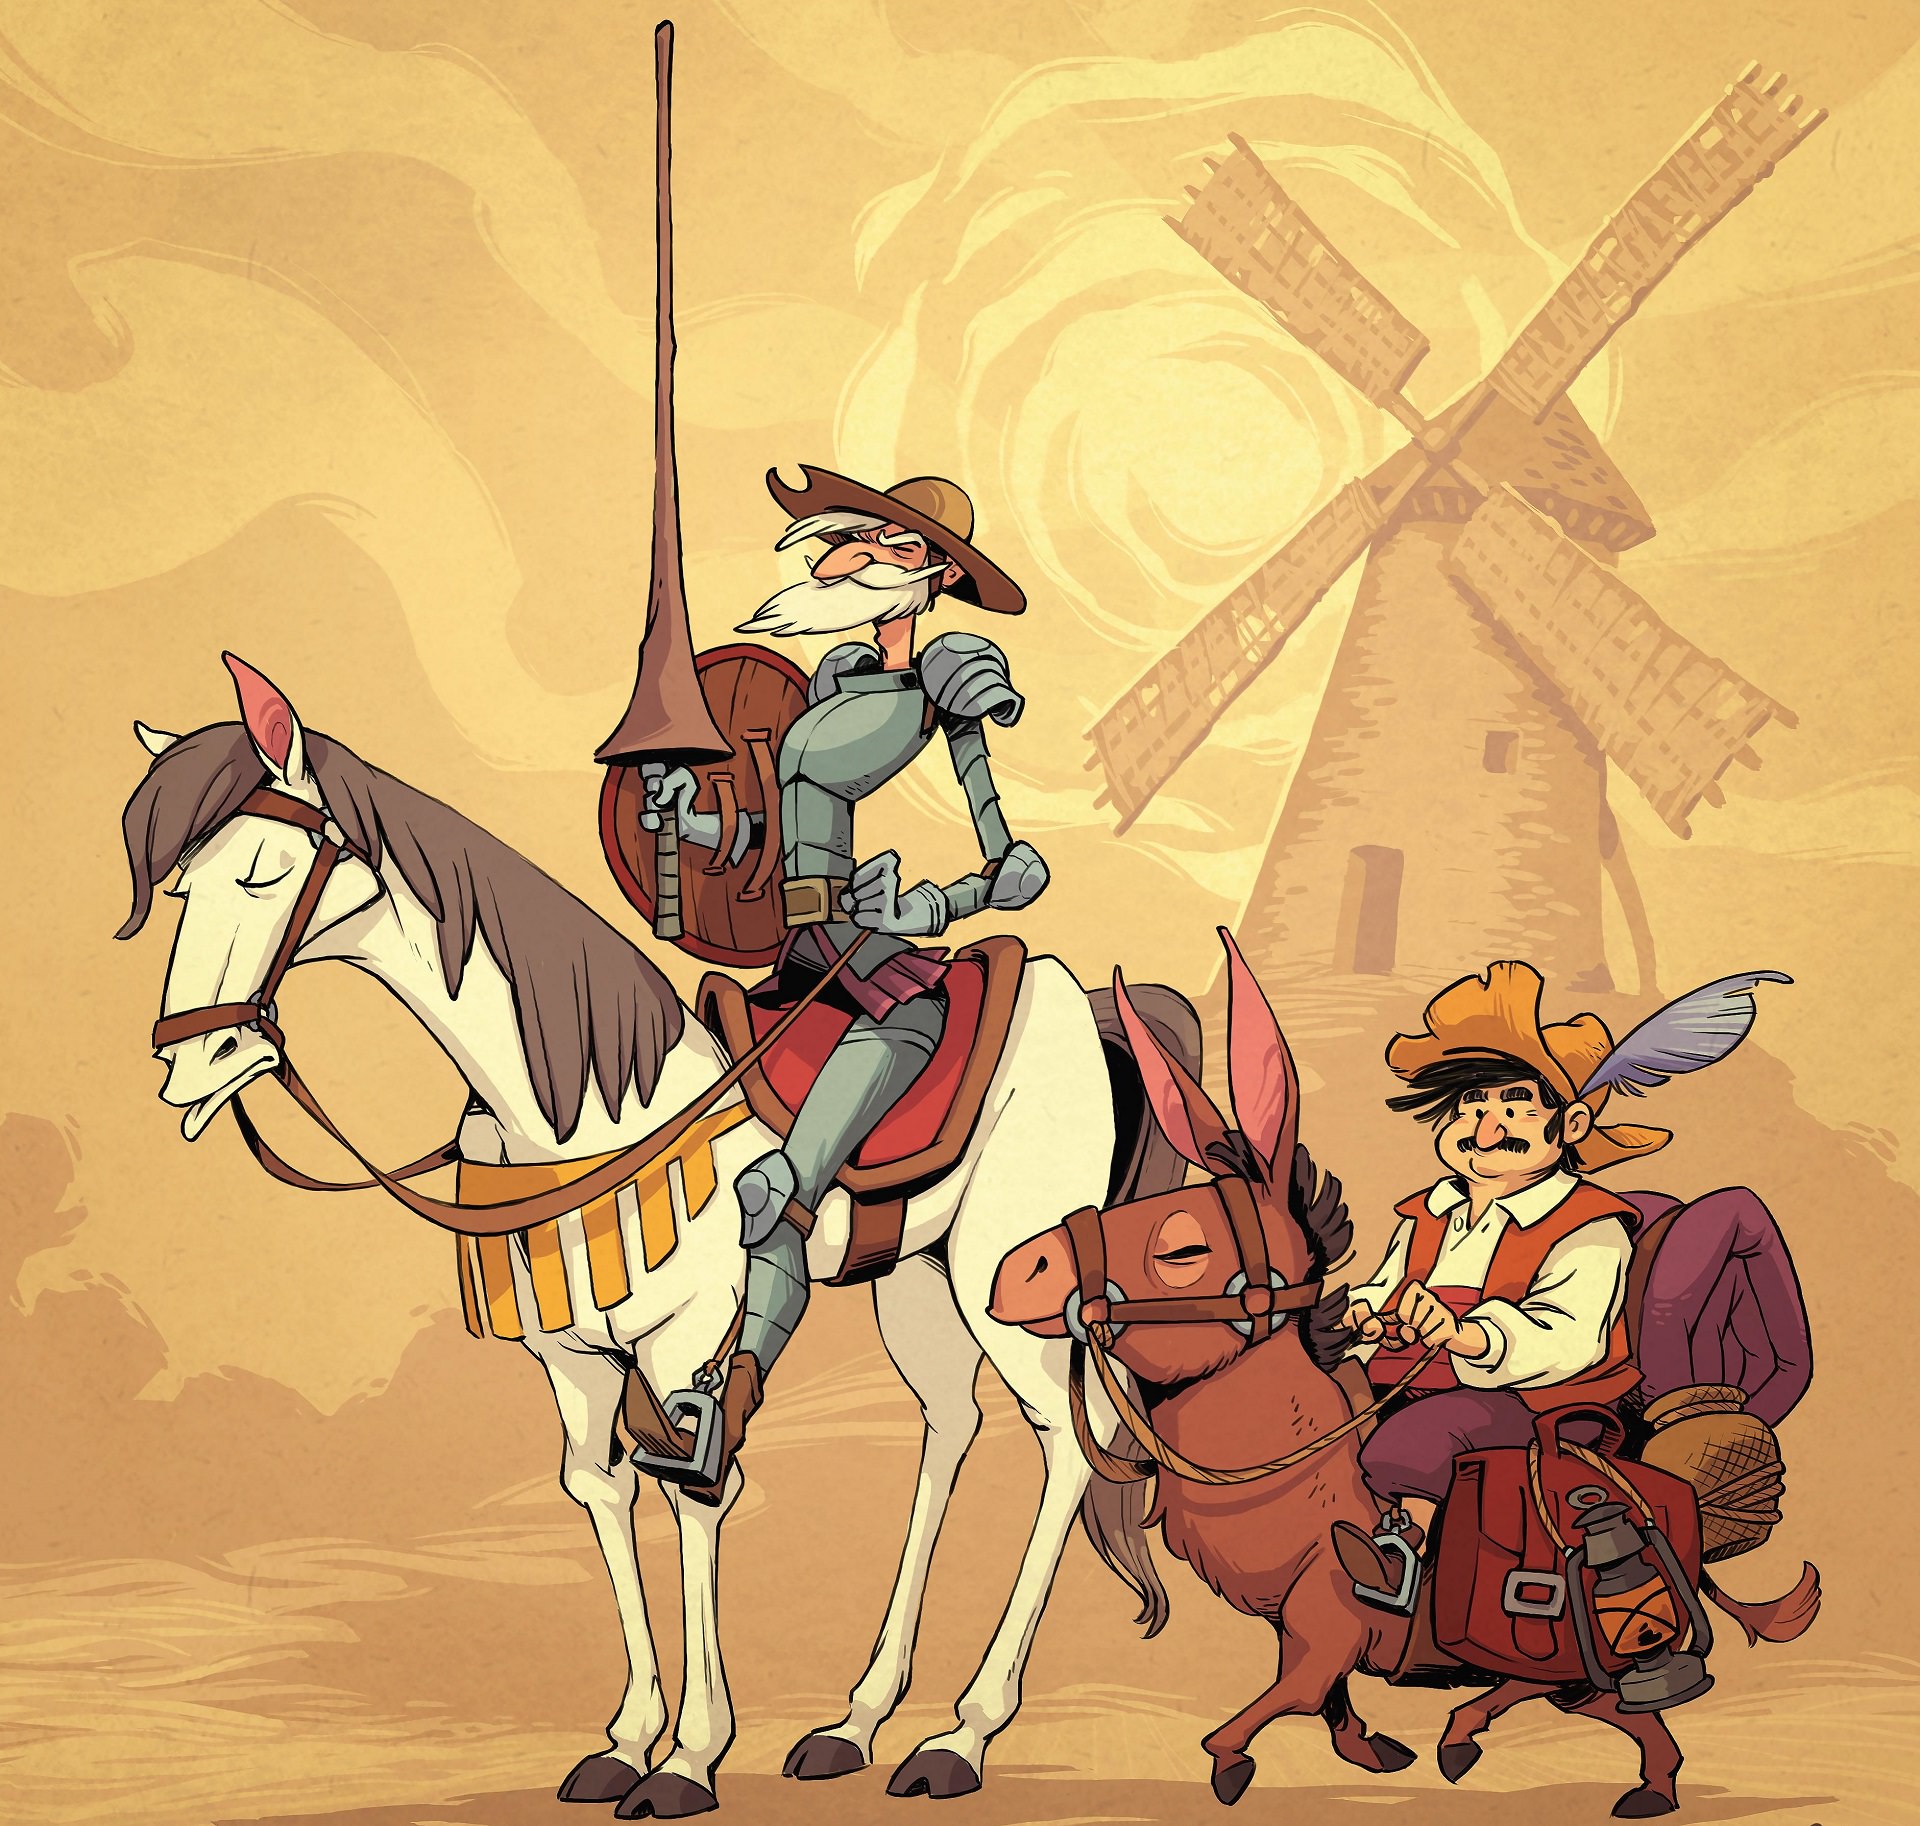 نقاشی از دون کیشوت و دوست او سوار بر اسب و الاغ برای جنگ با آسیاب بادی 